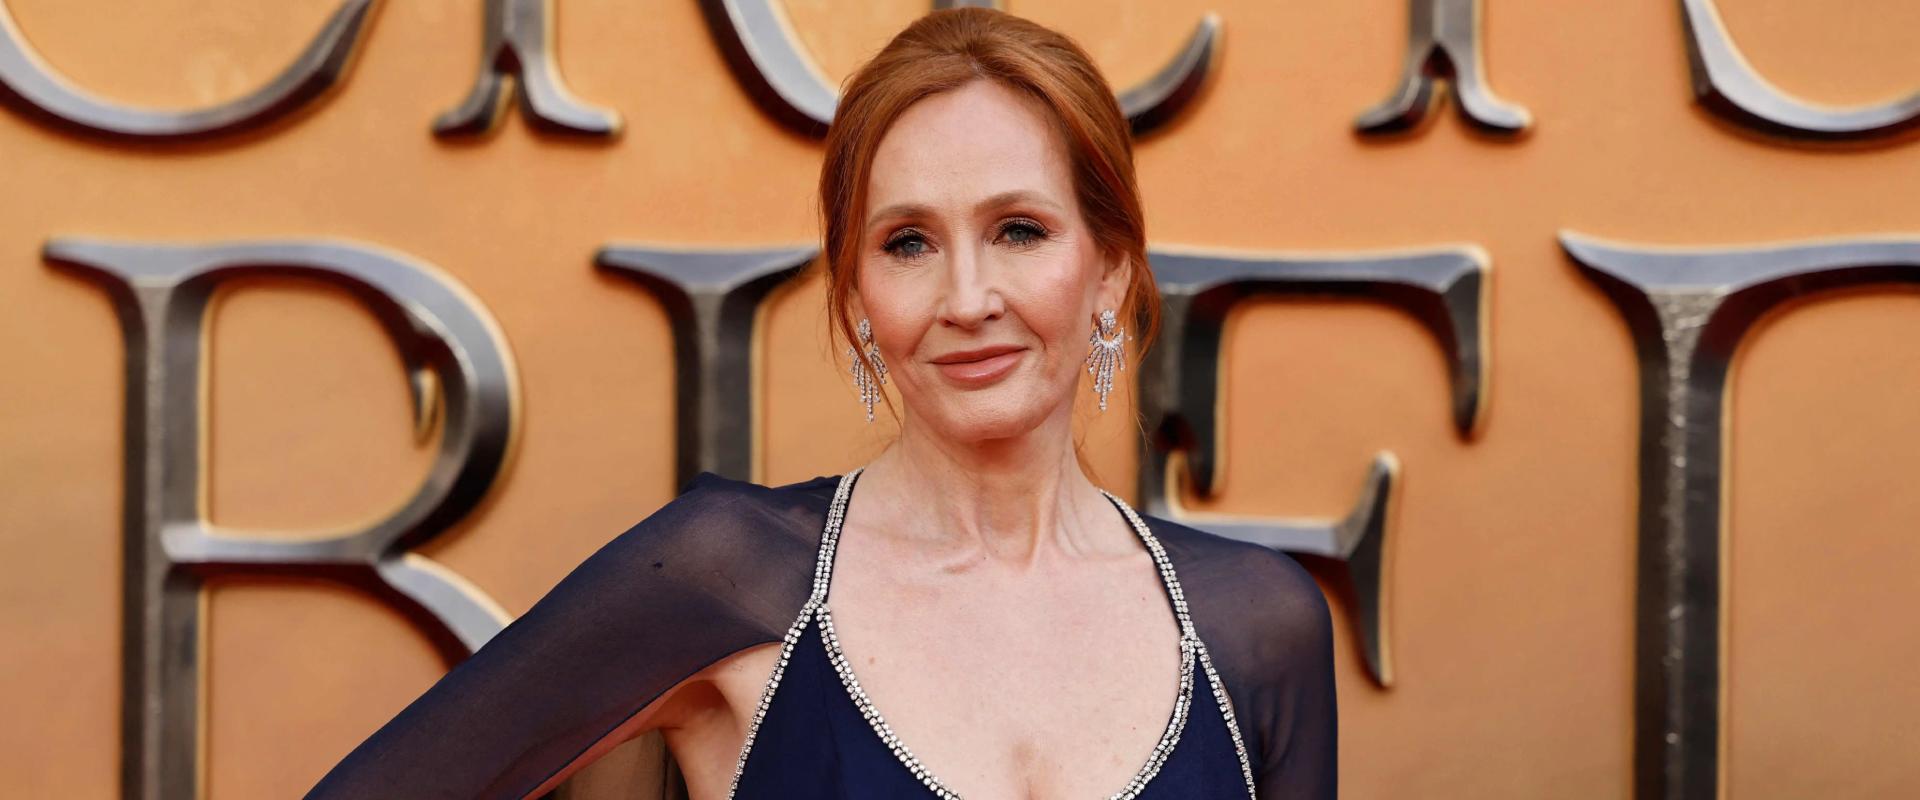 Feljentették J.K. Rowlingot, mert transzfób bűncselekményt követett el